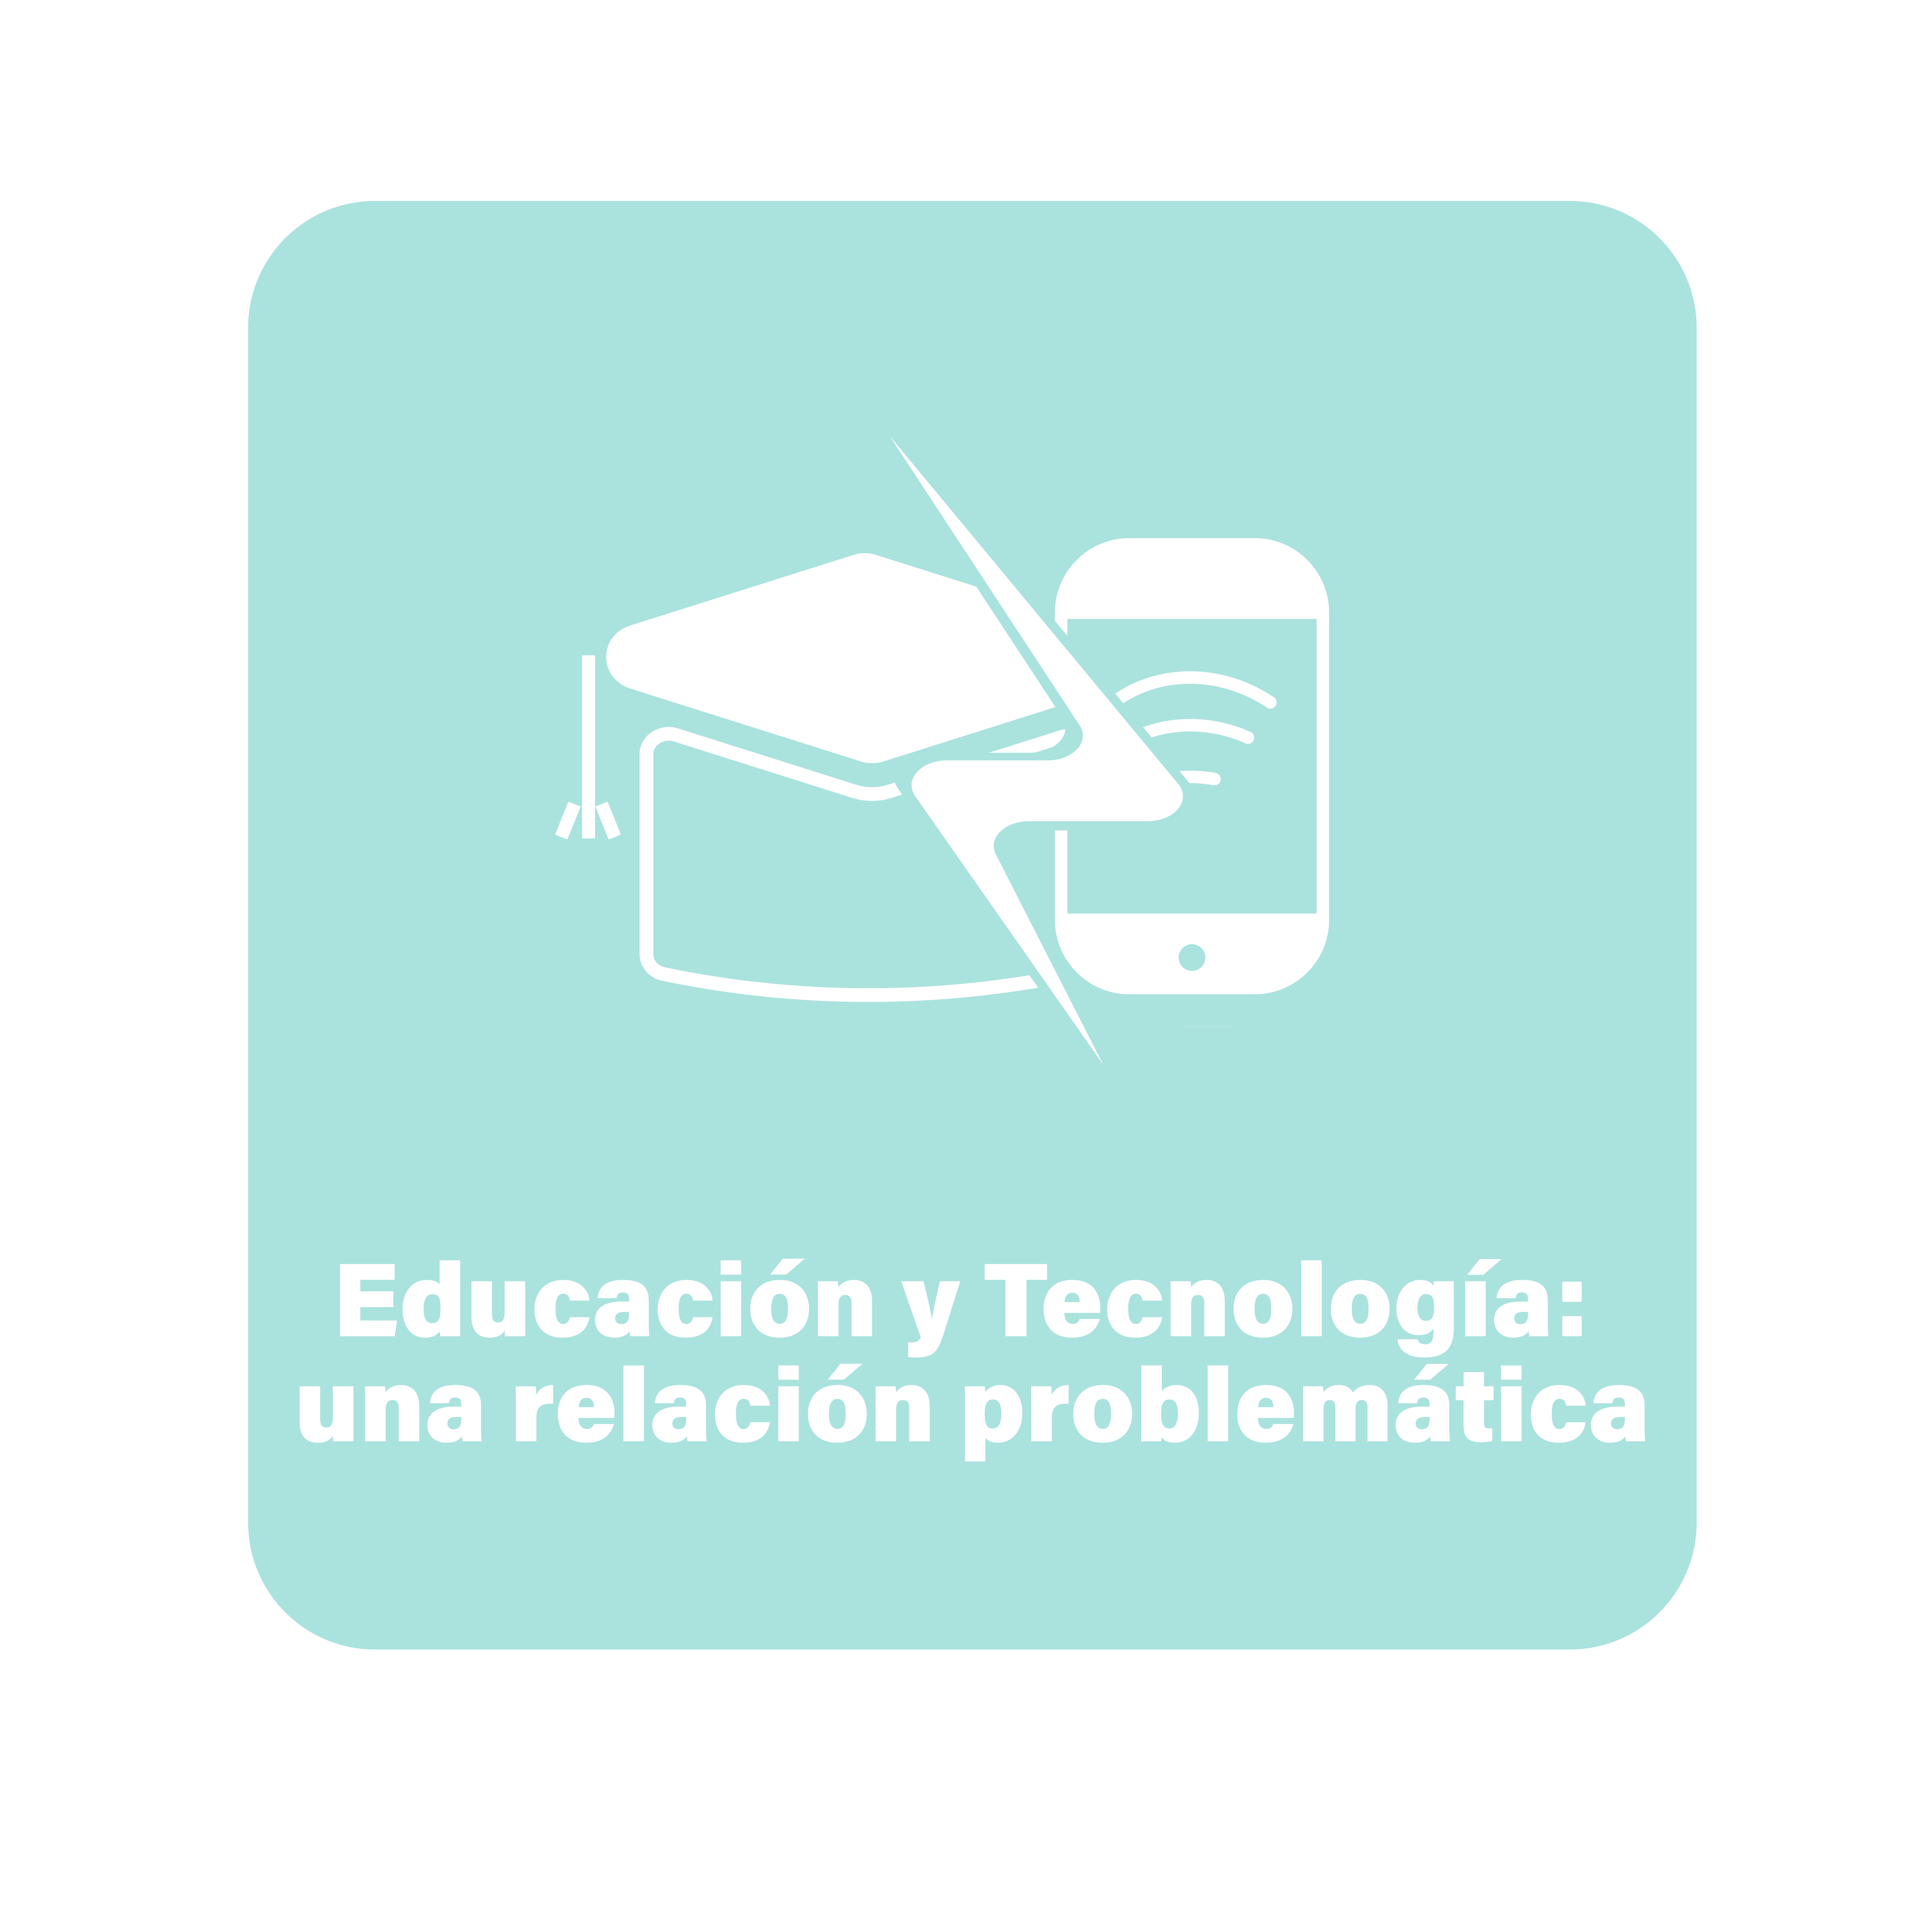 Educación y tecnología